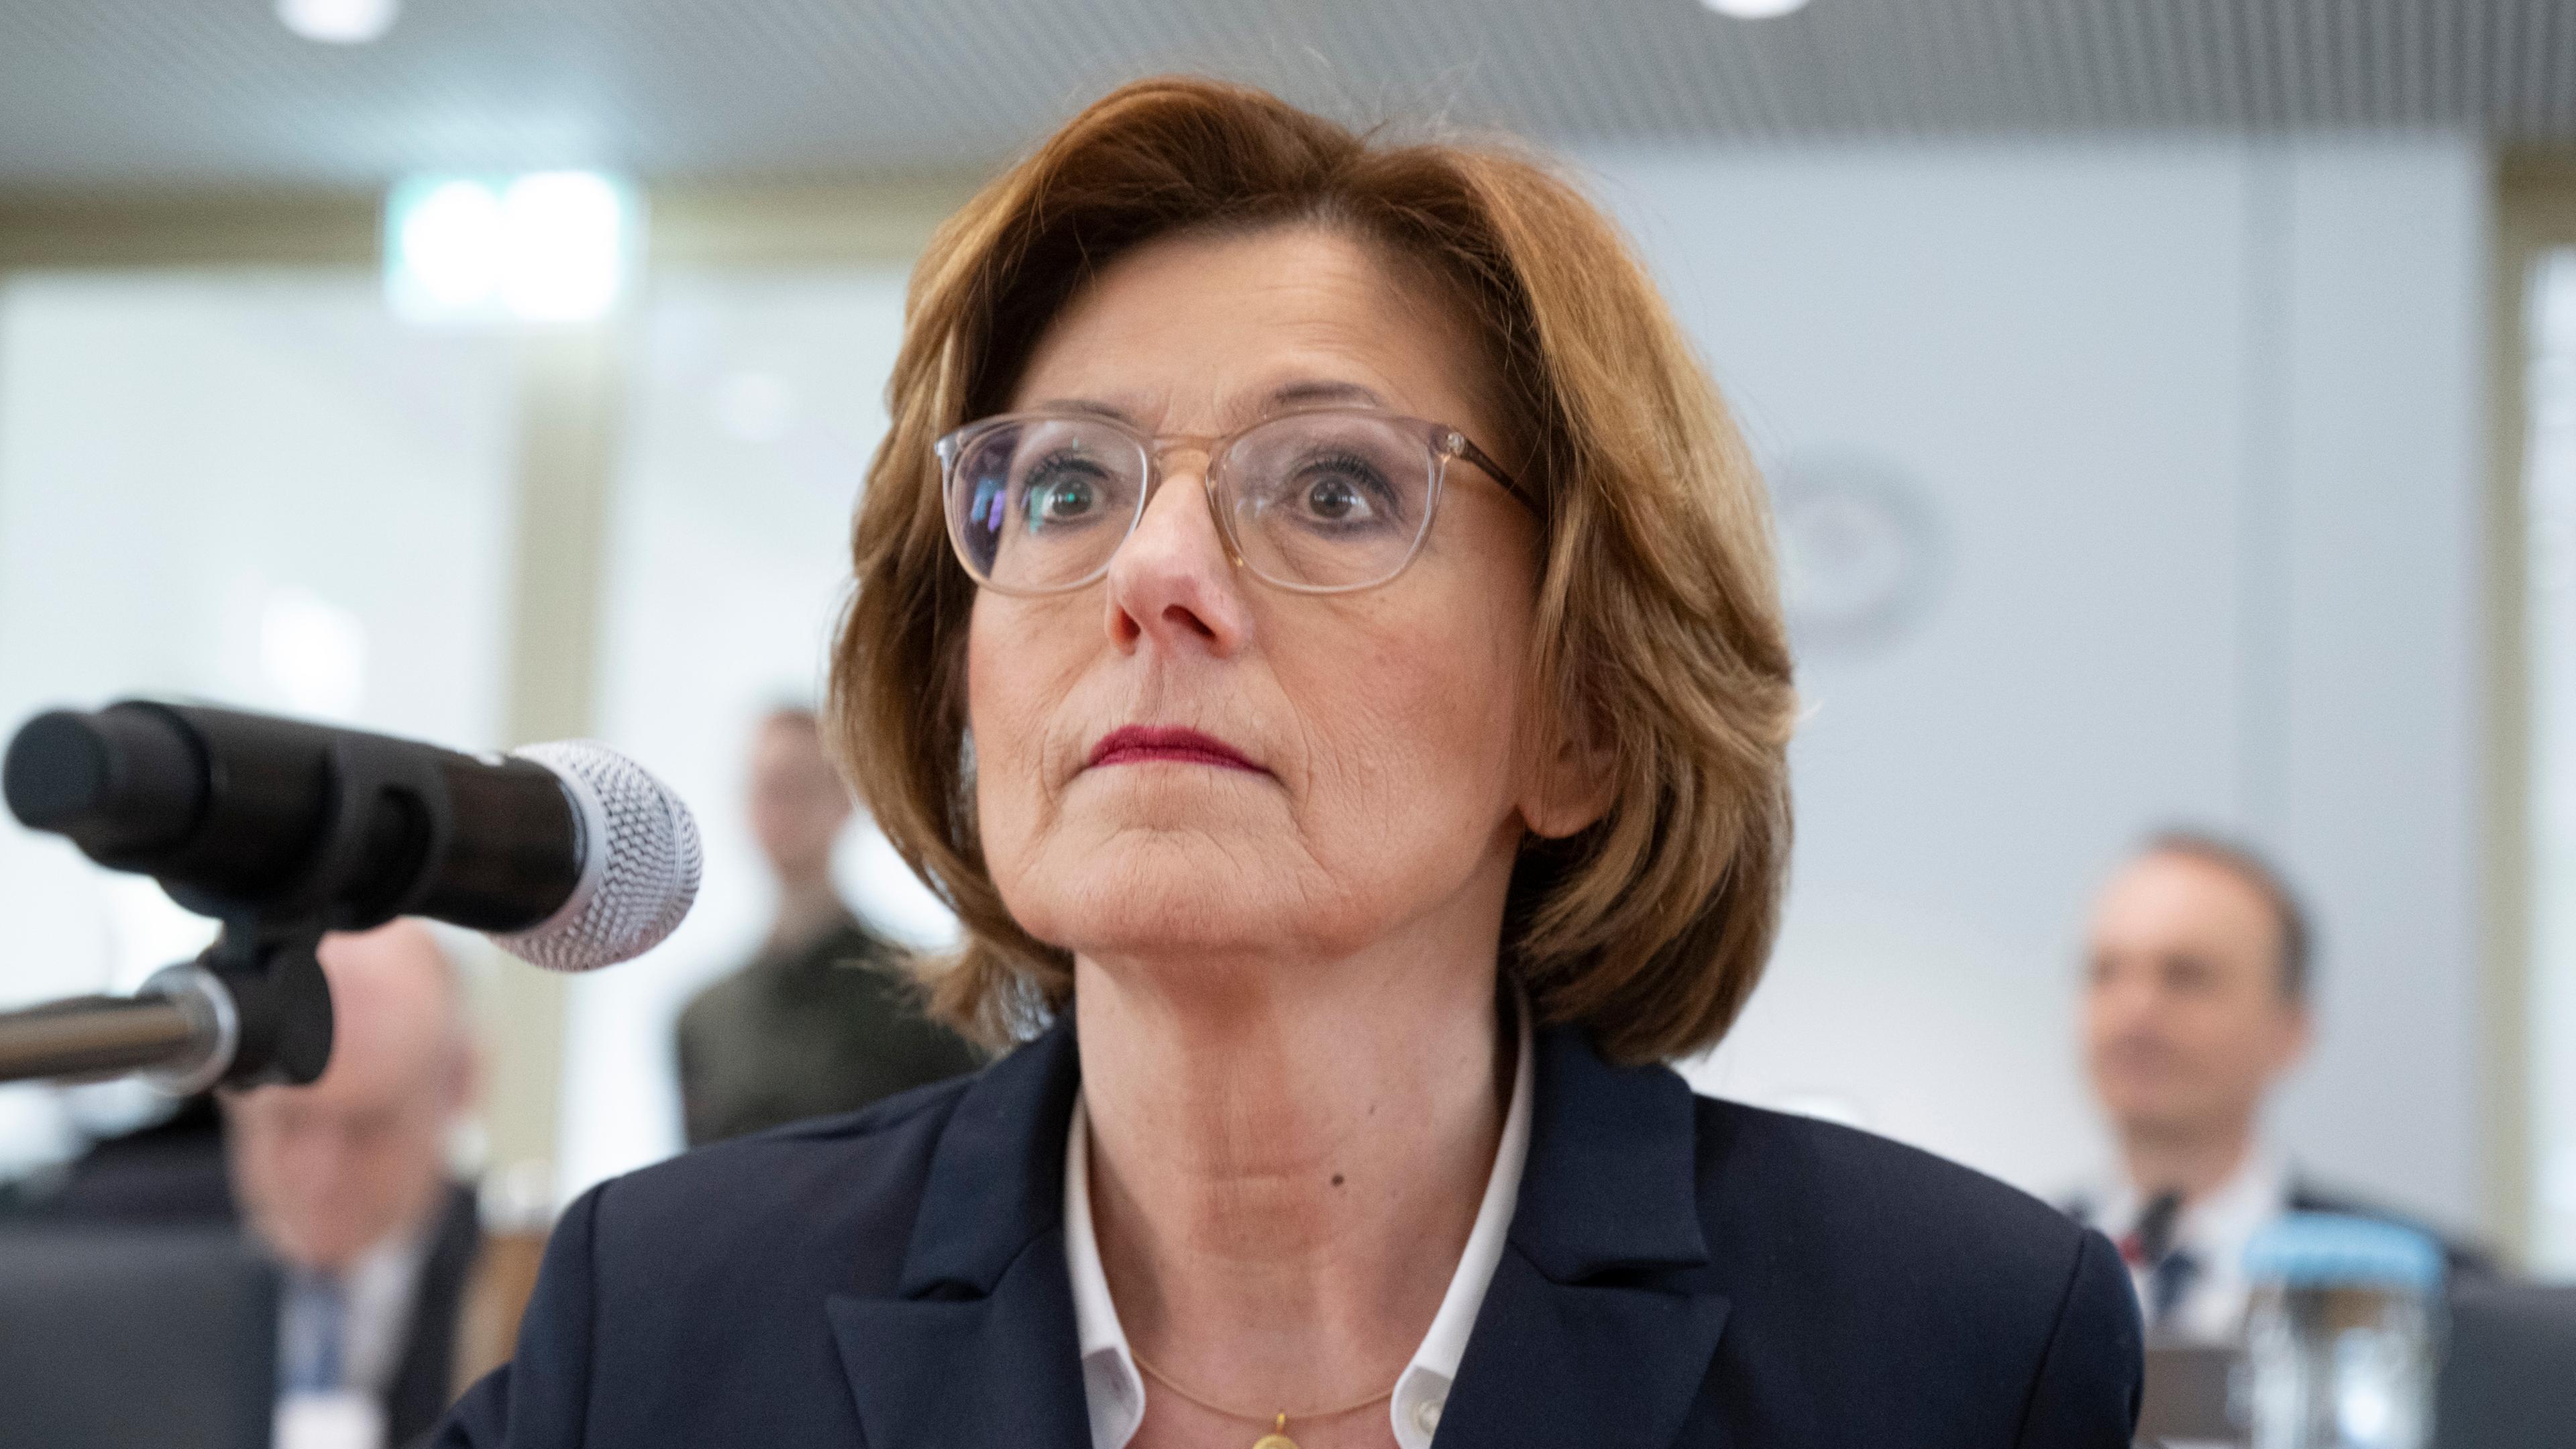  Malu Dreyer (SPD), Ministerpräsidentin von Rheinland-Pfalz, kommt zur Sitzung des Untersuchungsausschuss zur Flutkatastrophe im Ahrtal, Bei der Sitzung wird die öffentliche Beweisaufnahme fortgesetzt.